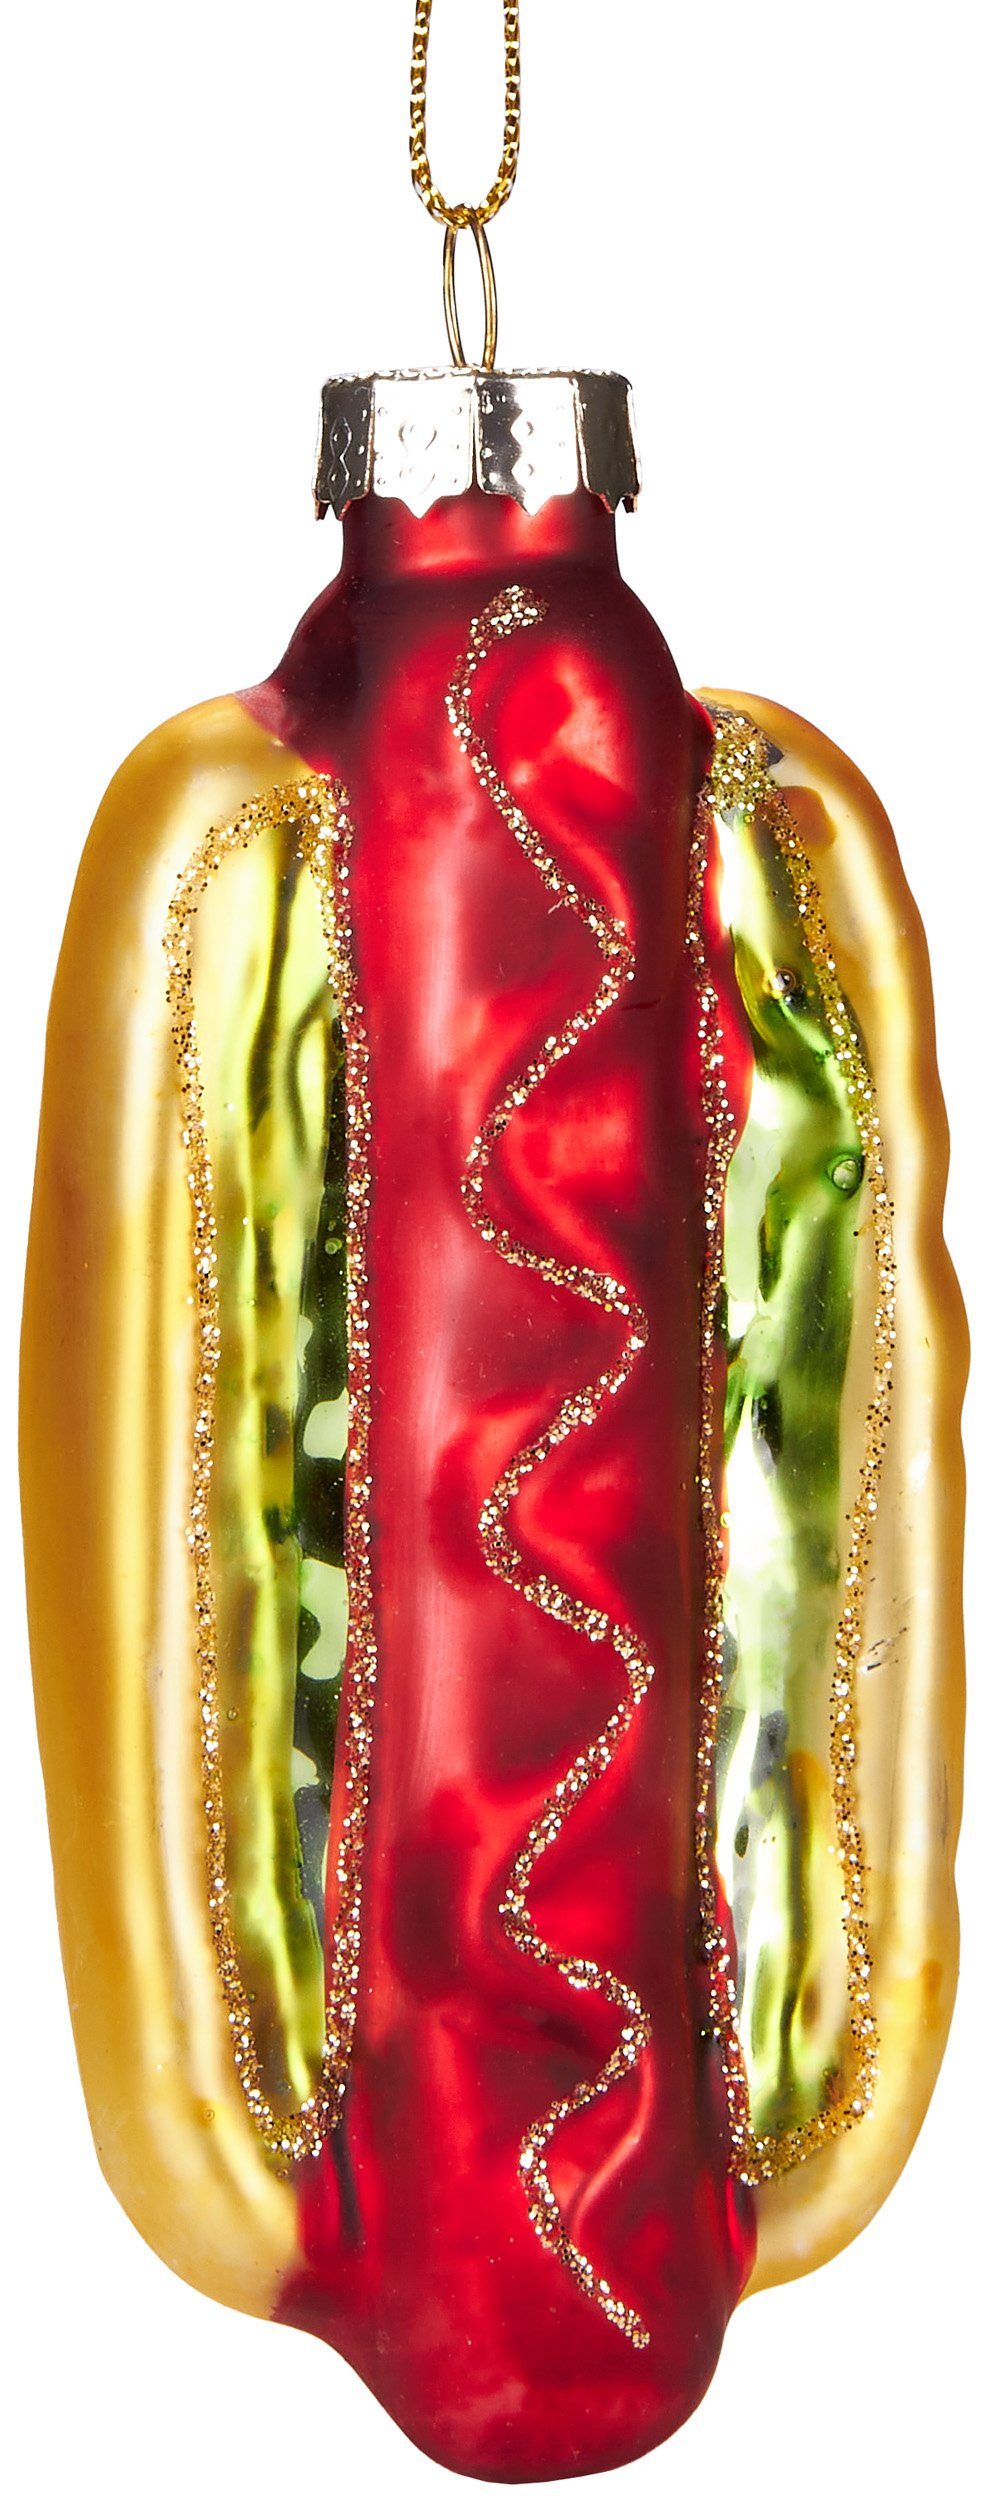 BRUBAKER Christbaumschmuck »Mundgeblasene Weihnachtskugel Dänischer Hot  Dog«, Fast Food Weihnachtsdekoration aus Glas, handbemalt, lustige  Baumkugel - 10 cm online kaufen | OTTO